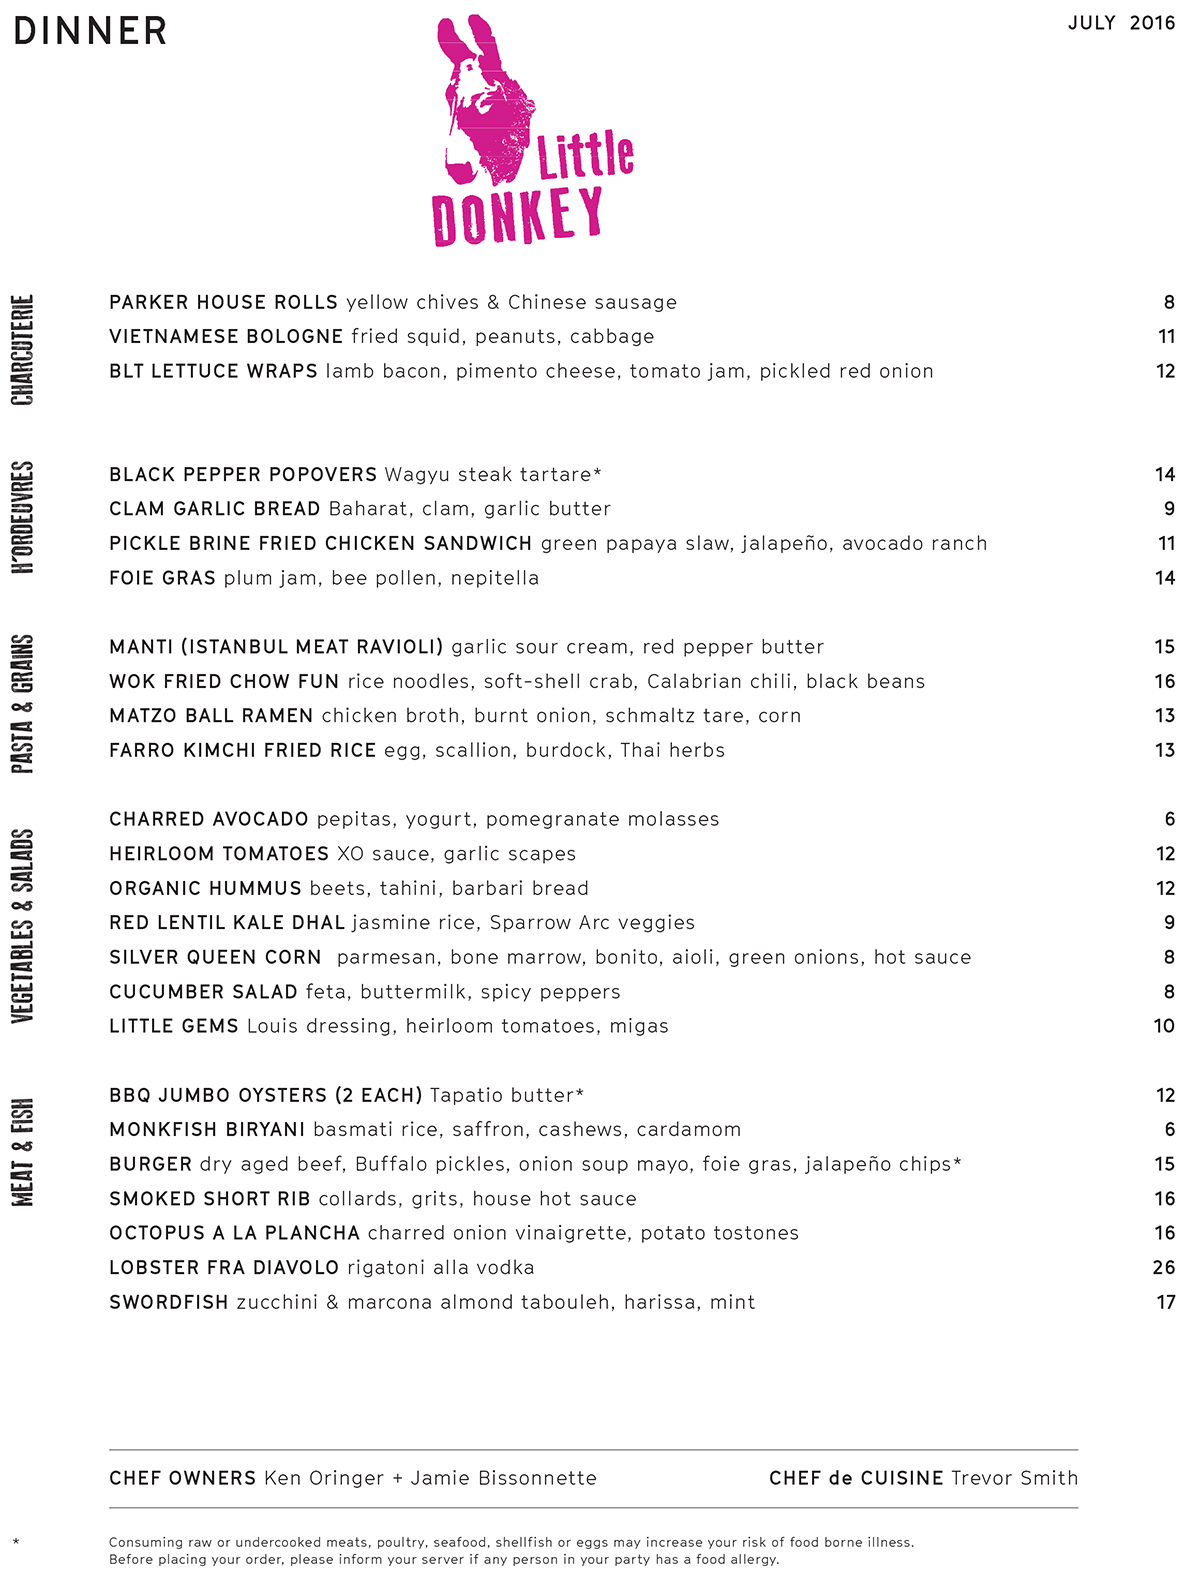 Little Donkey July 2016 dinner menu